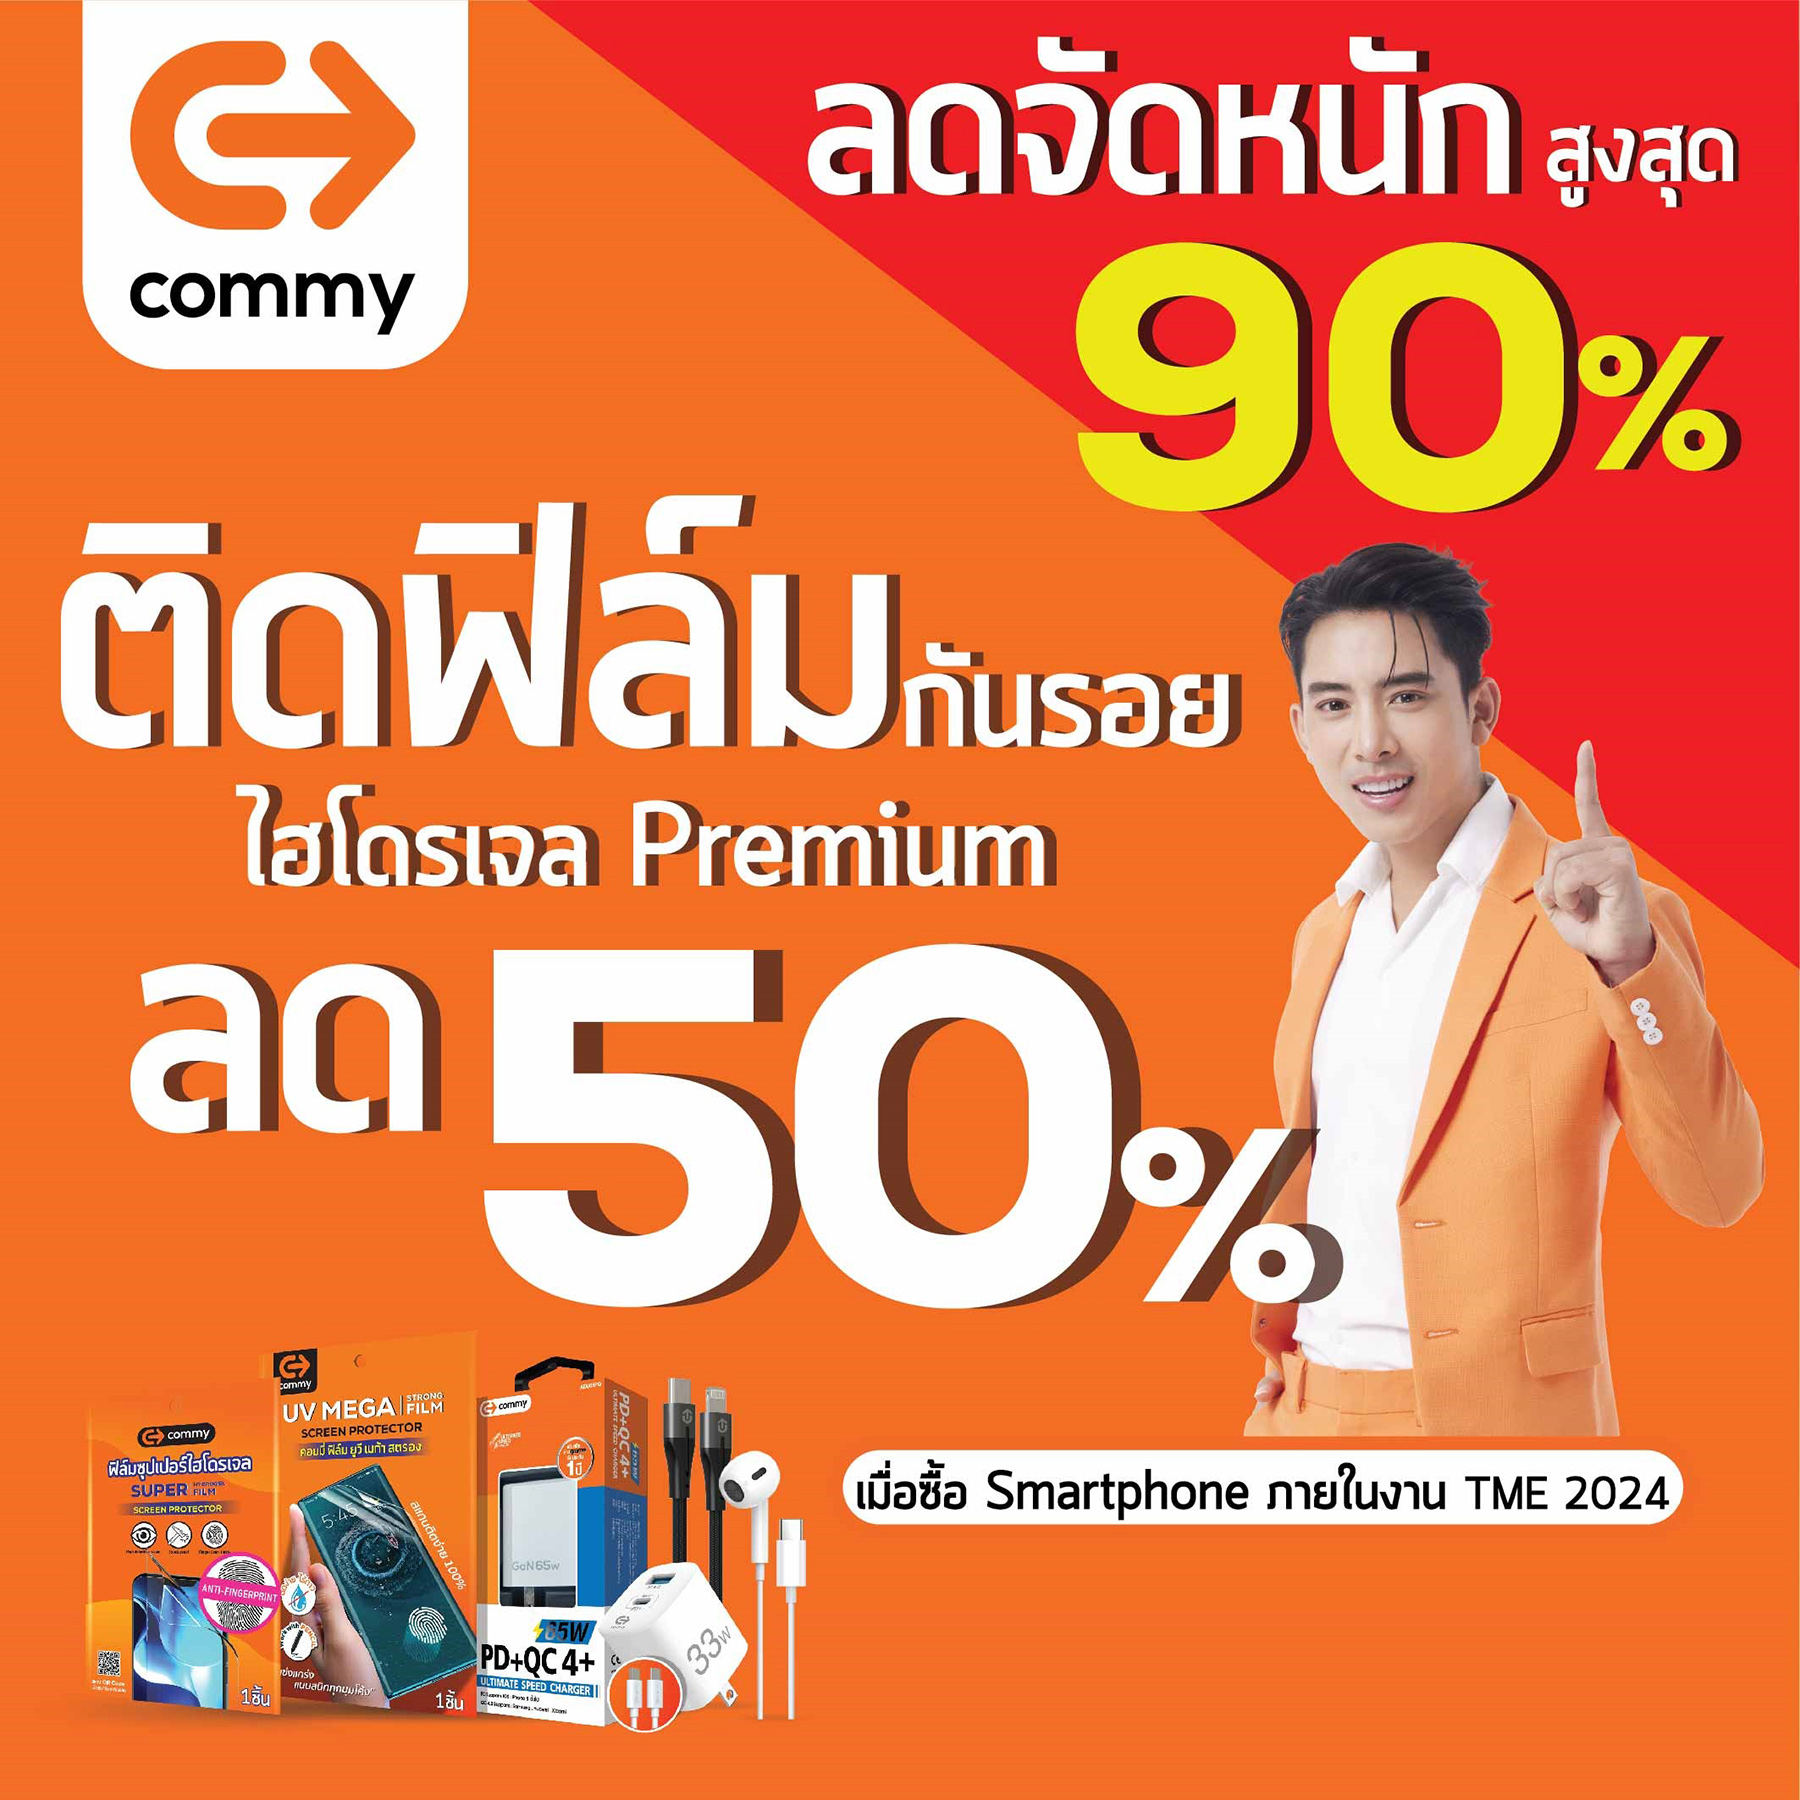 คอมมี่ จัดโปรหนักในงาน Thailand Mobile EXPO ช้อปให้ใจฟูกับส่วนลดแบบจุกๆ 90%